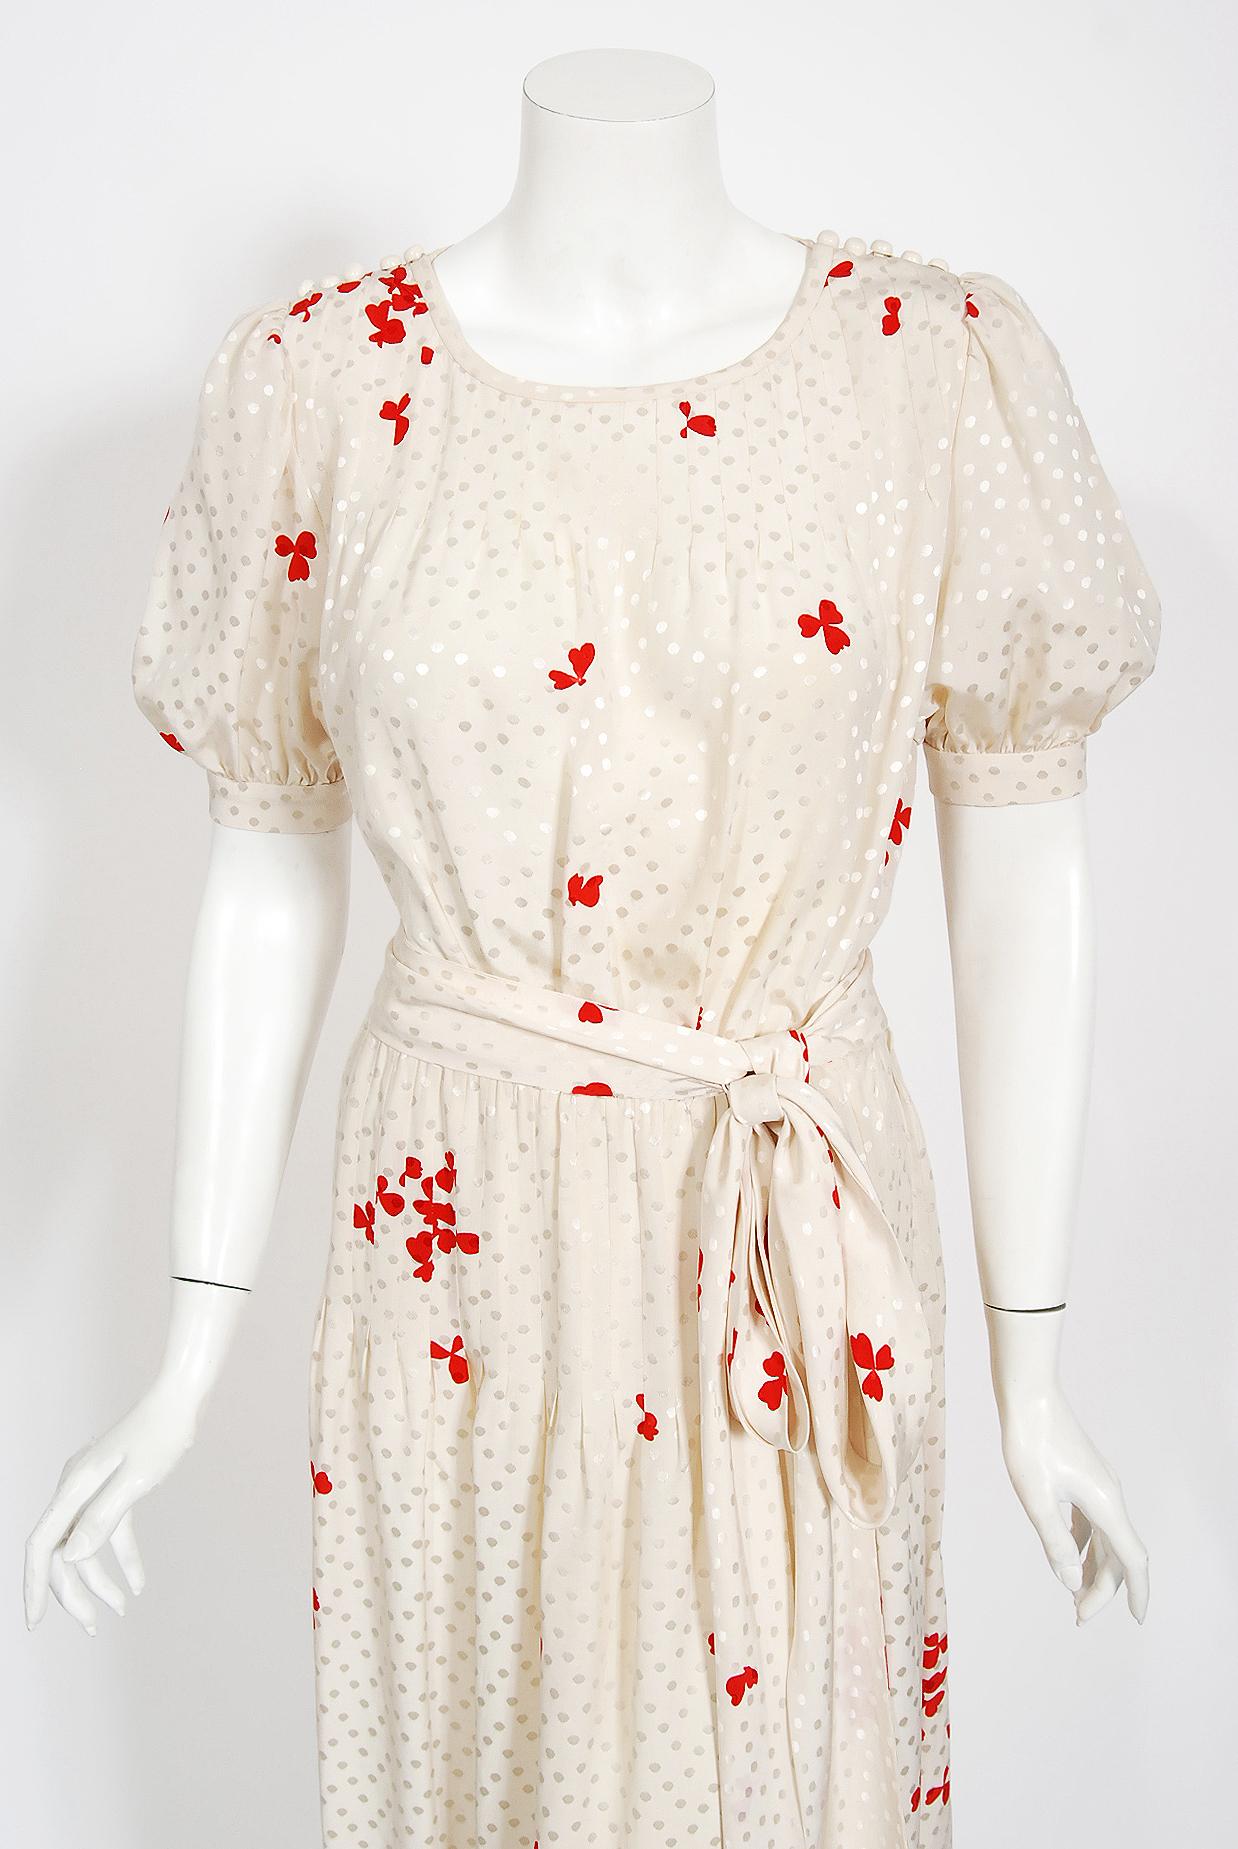 Magnifique robe en soie ivoire à pois et imprimé trèfle rouge d'Yves Saint Laurent, issue de sa collection printemps/été 1978. Il est si rare de trouver les trois pièces ensemble ! La robe est très chic avec ses boutons sur l'épaule et ses courtes